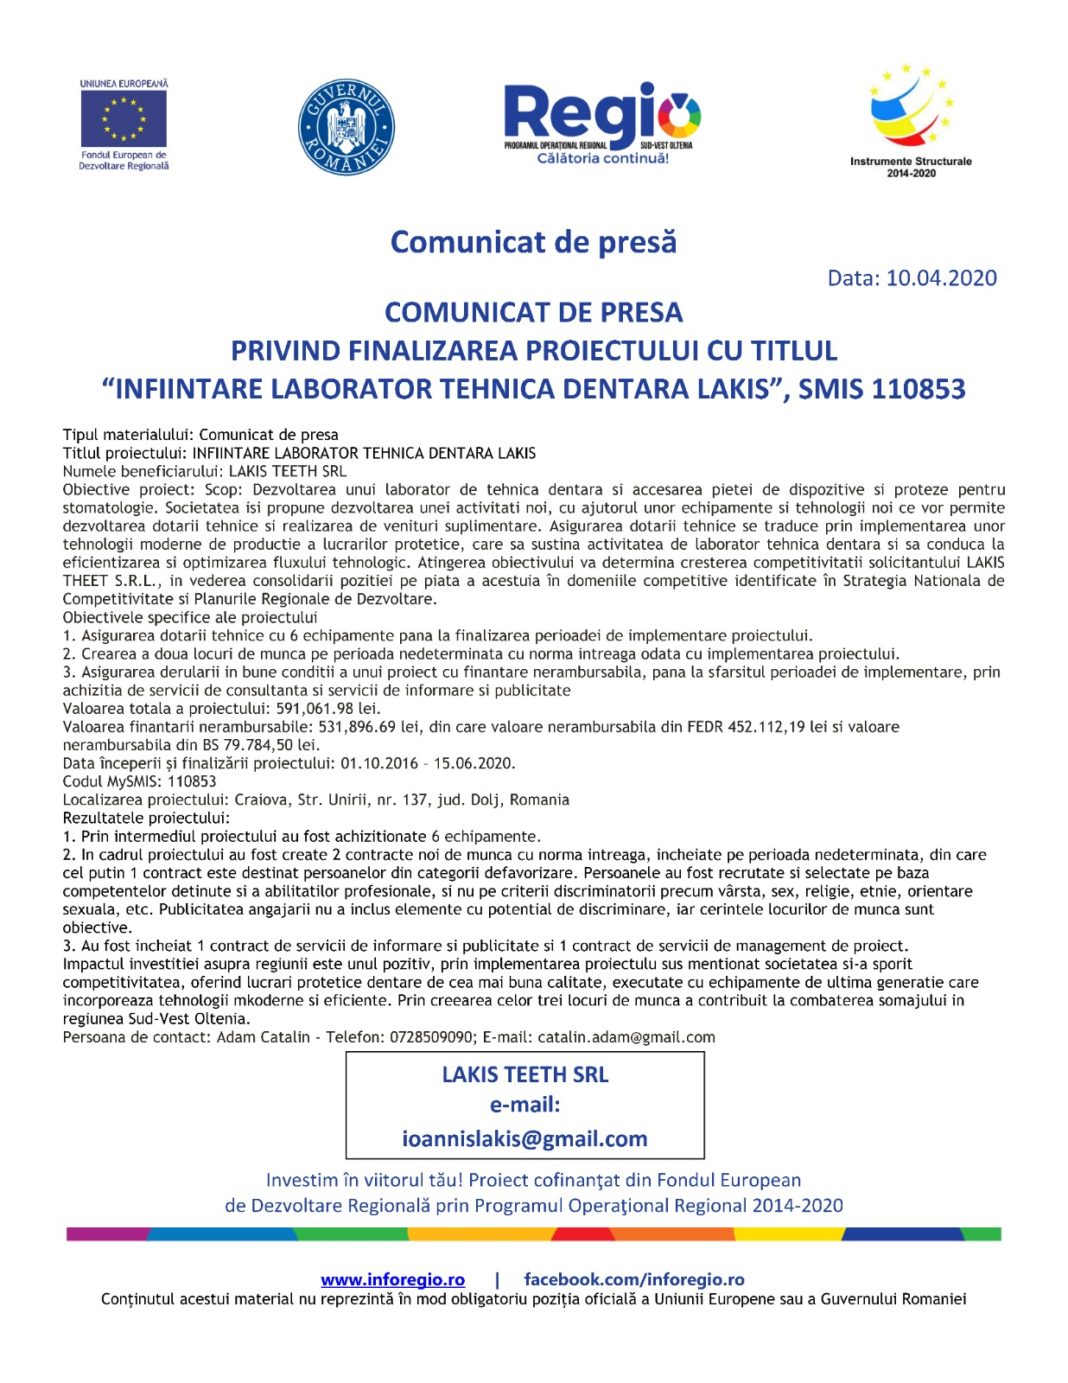 COMUNICAT DE PRESĂ PRIVIND FINALIZAREA PROIECTULUI CU TITLUL “ÎNFIINȚARE LABORATOR TEHNICĂ DENTARA LAKIS”, SMIS 110853